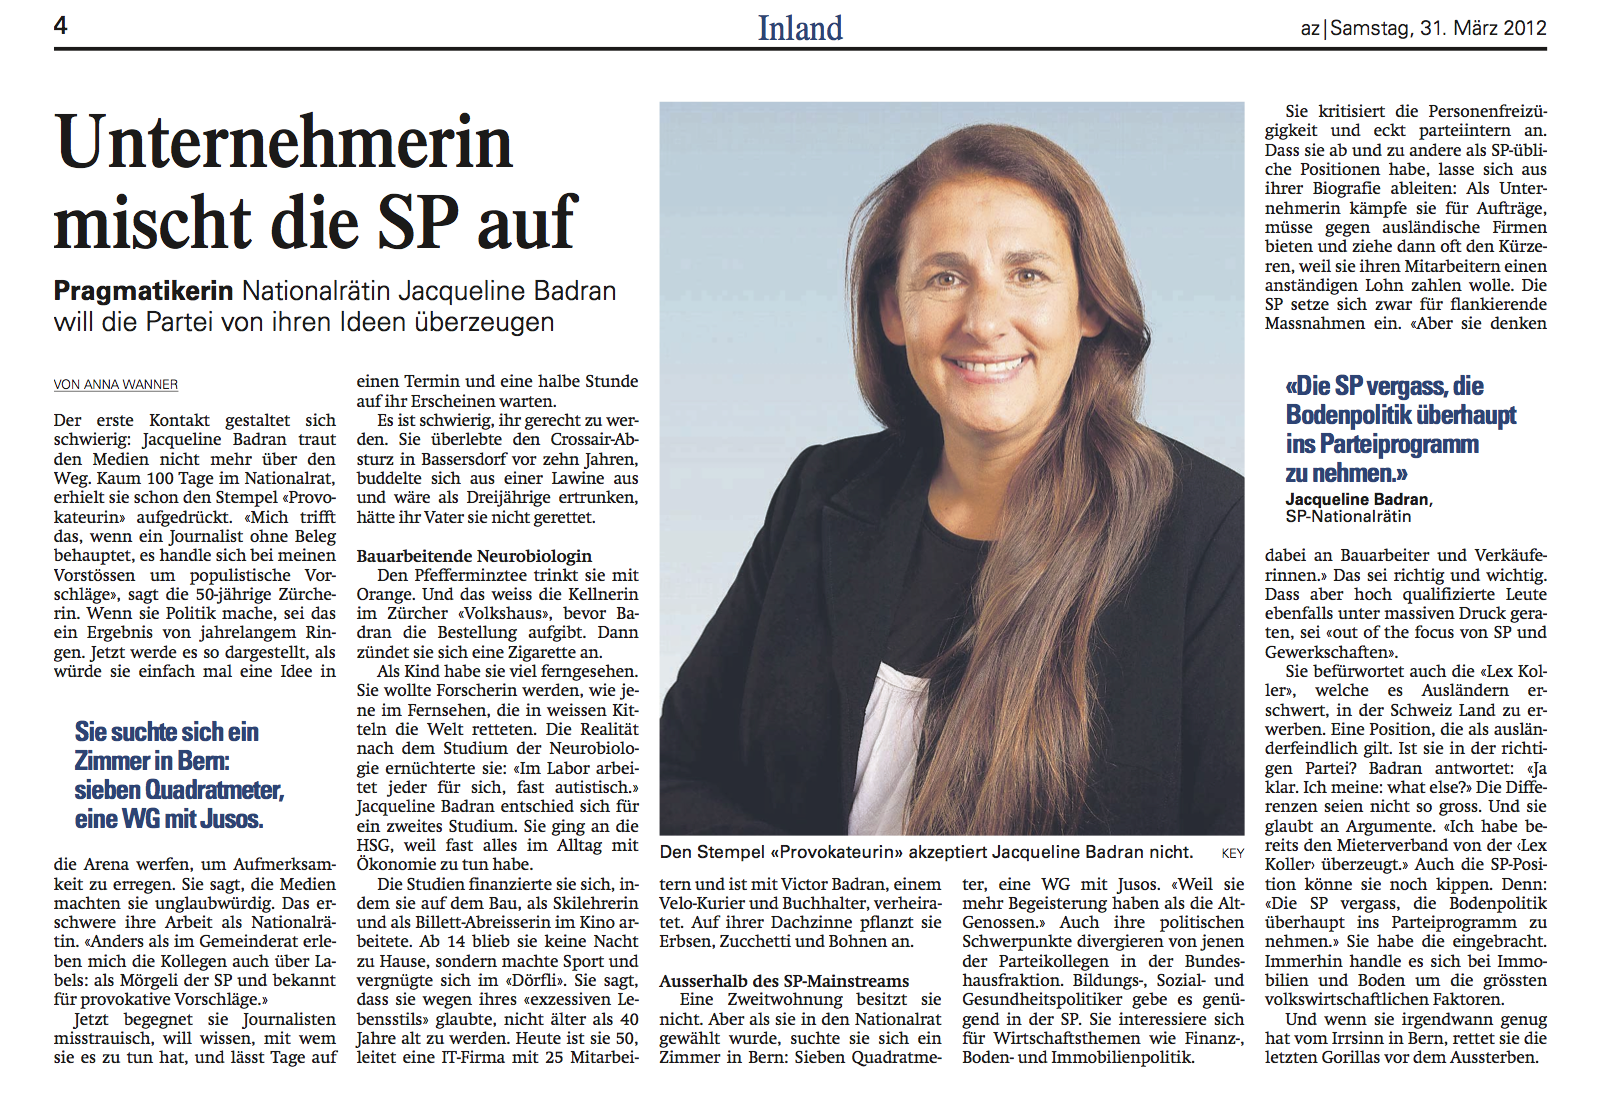 Artikel über Jacqueline Badran in der Aargauer Zeitung vom 31. März 2012